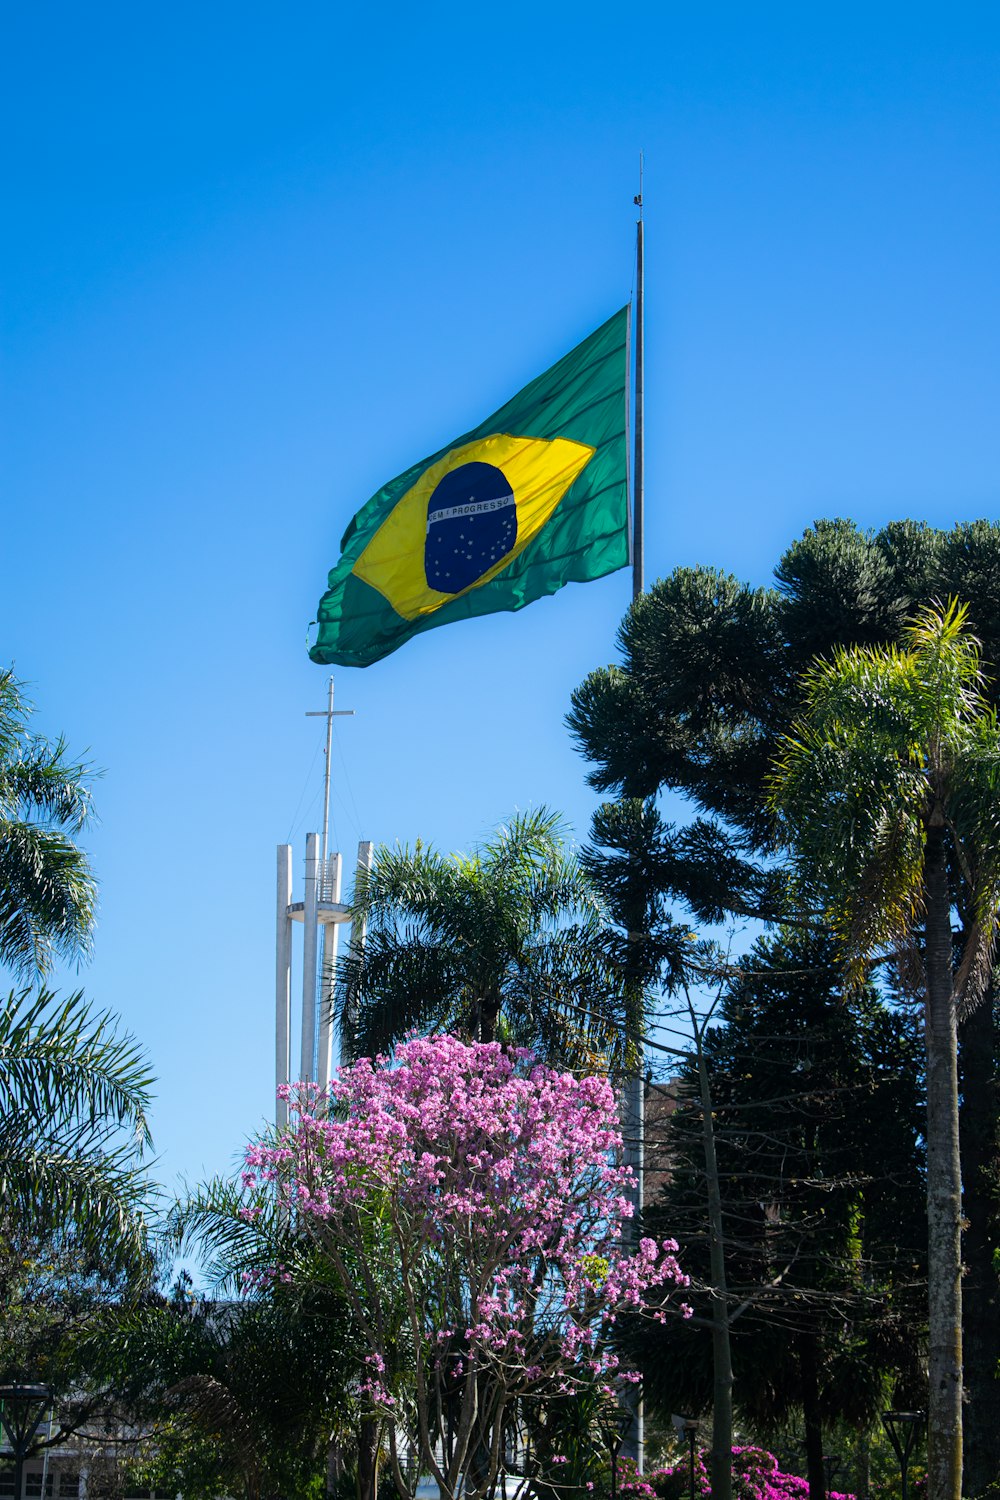 Grün-gelbe Flagge am Mast